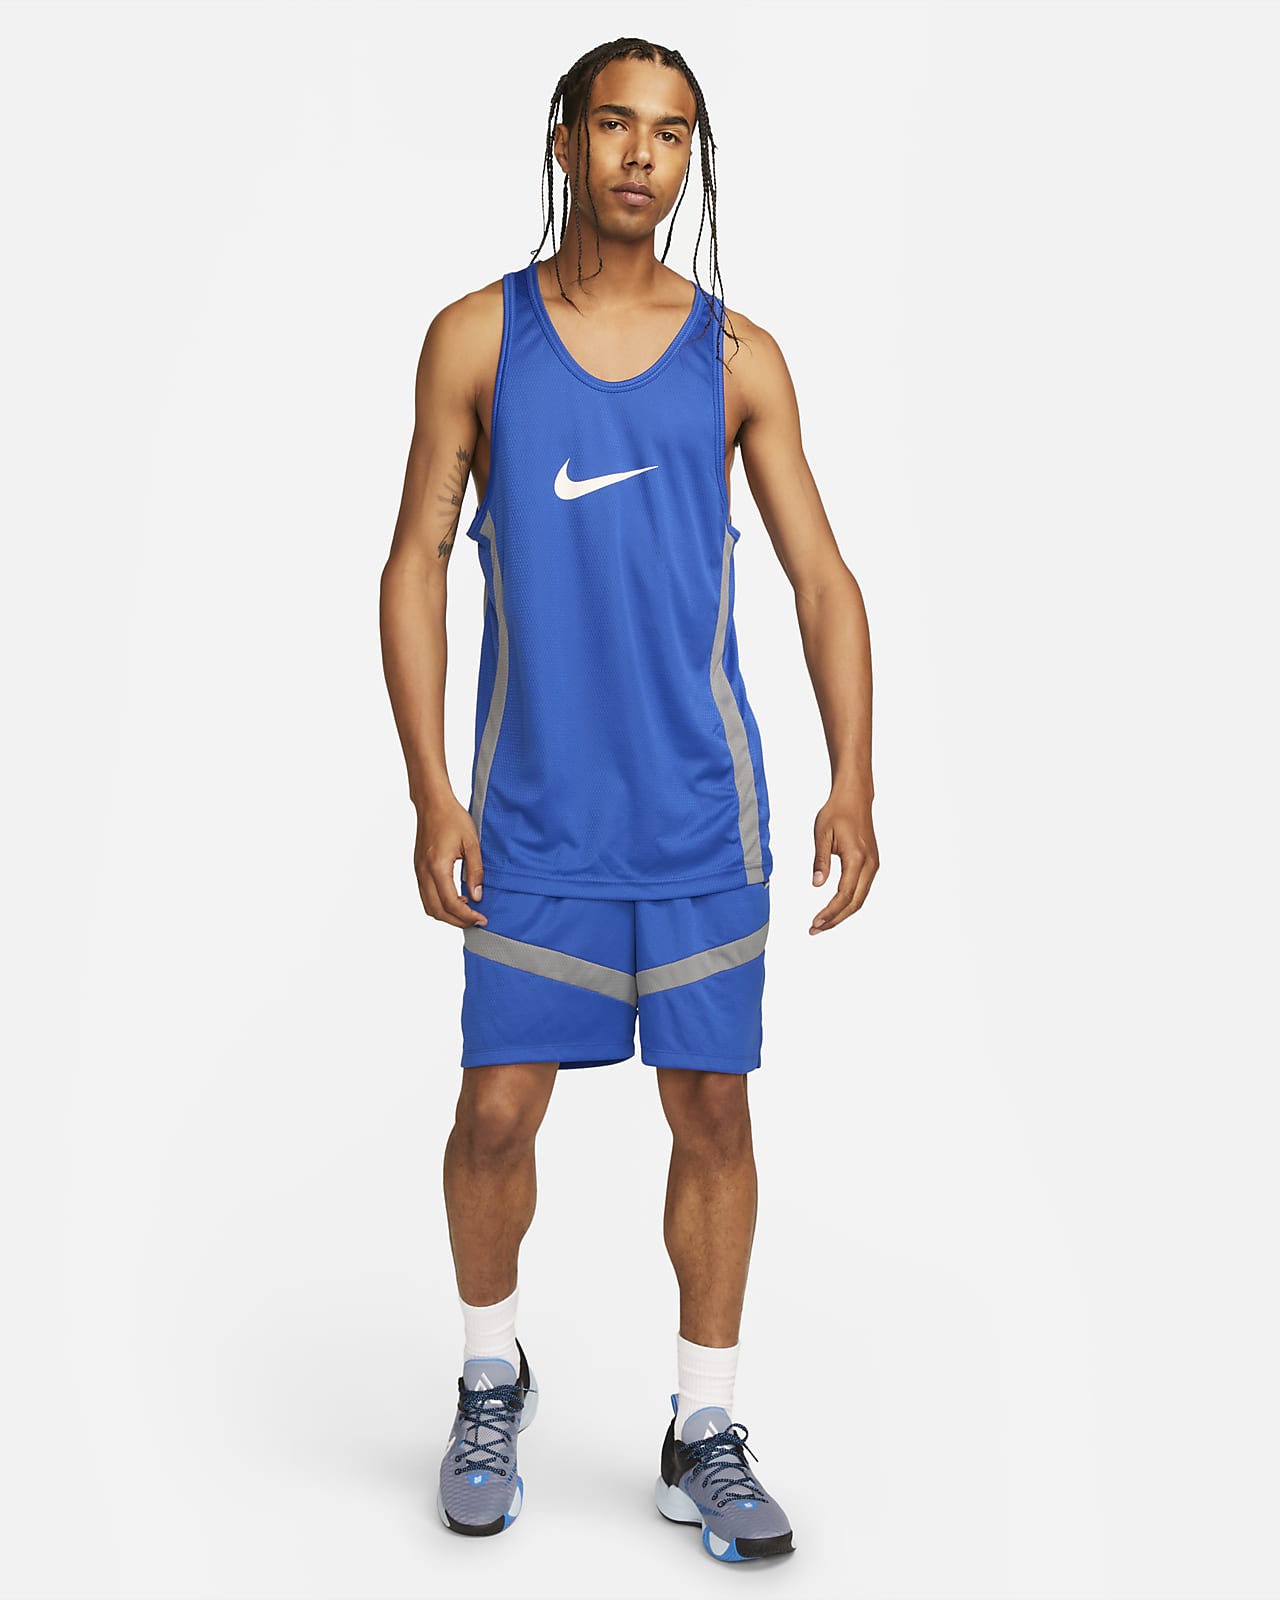 basketball jersey fits